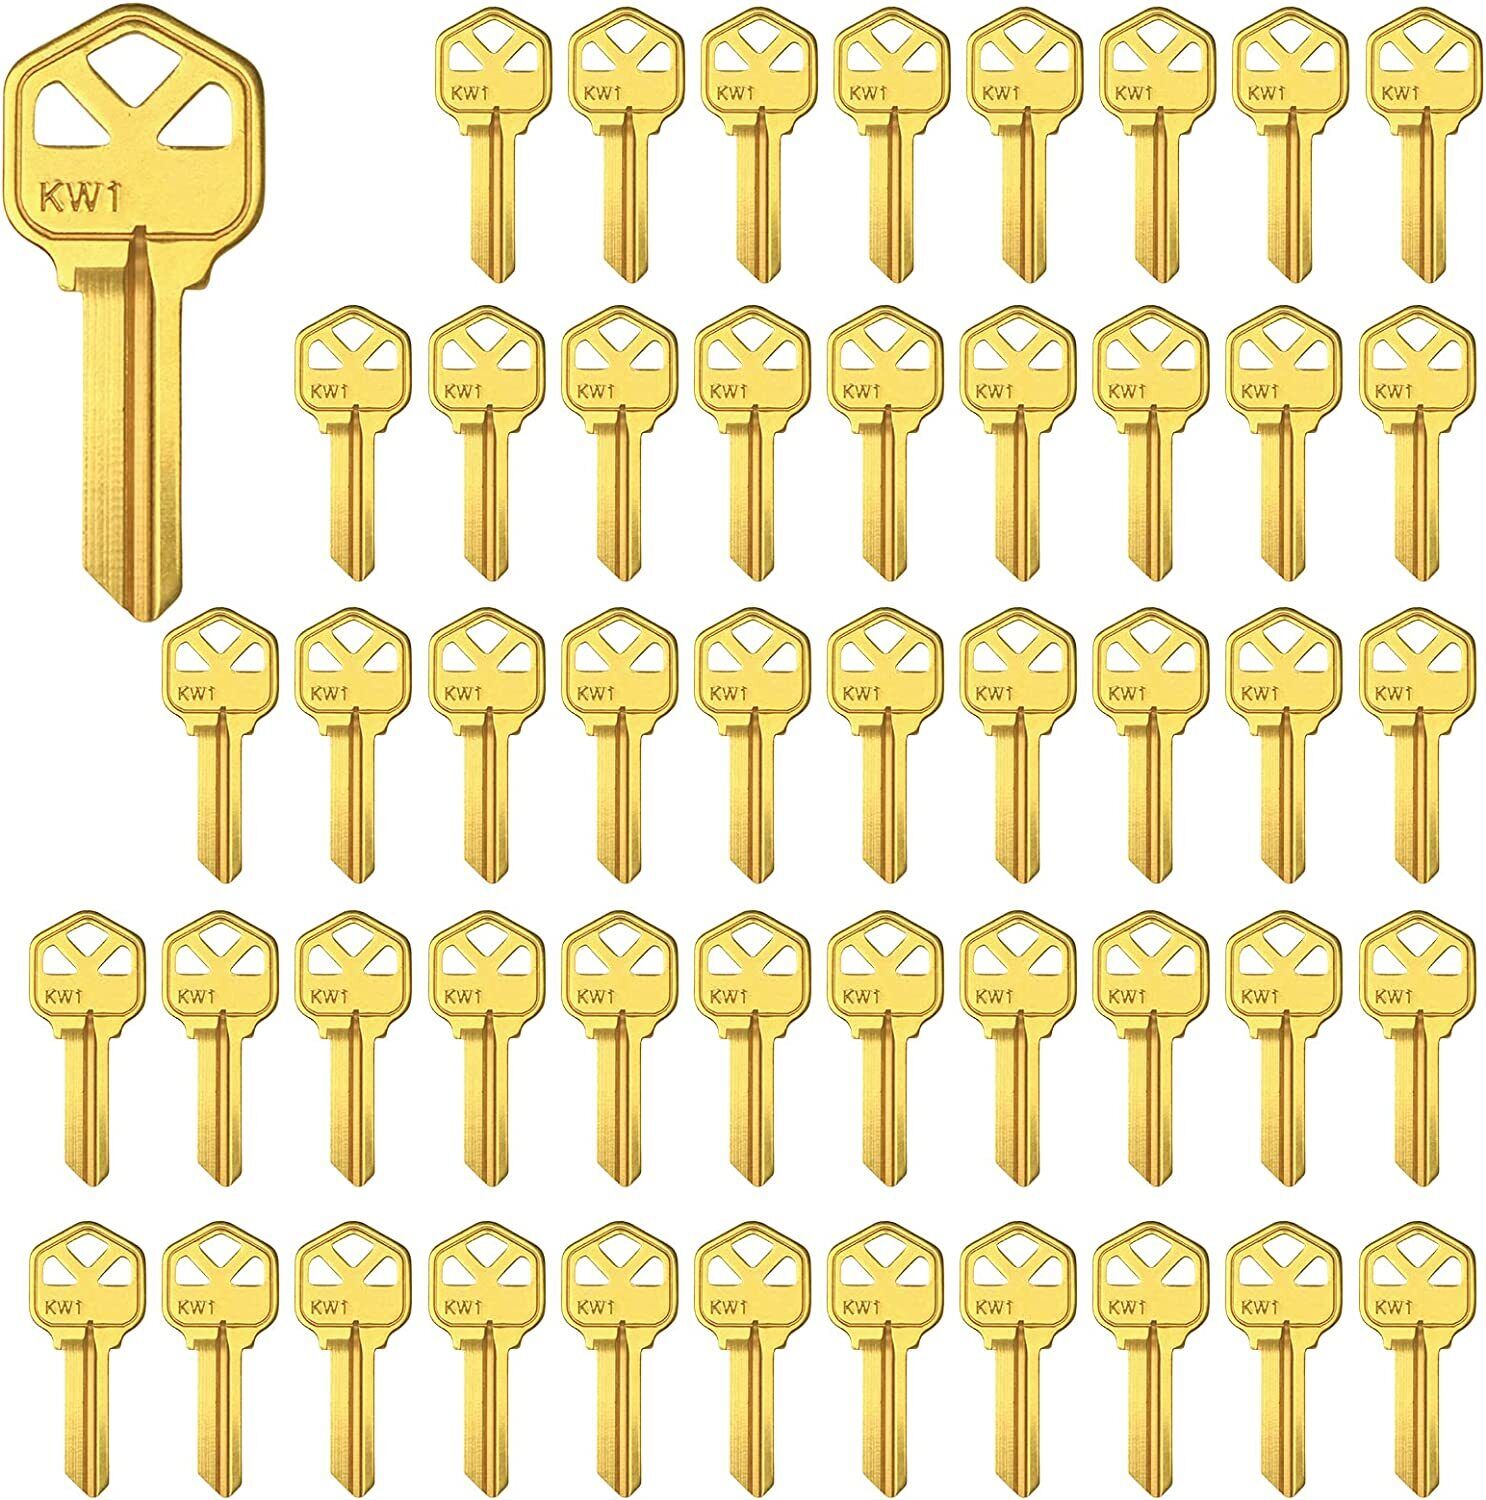 Brass Finish Key Blanks KW1 Uncut Blank Keys Pack of 50 Keys